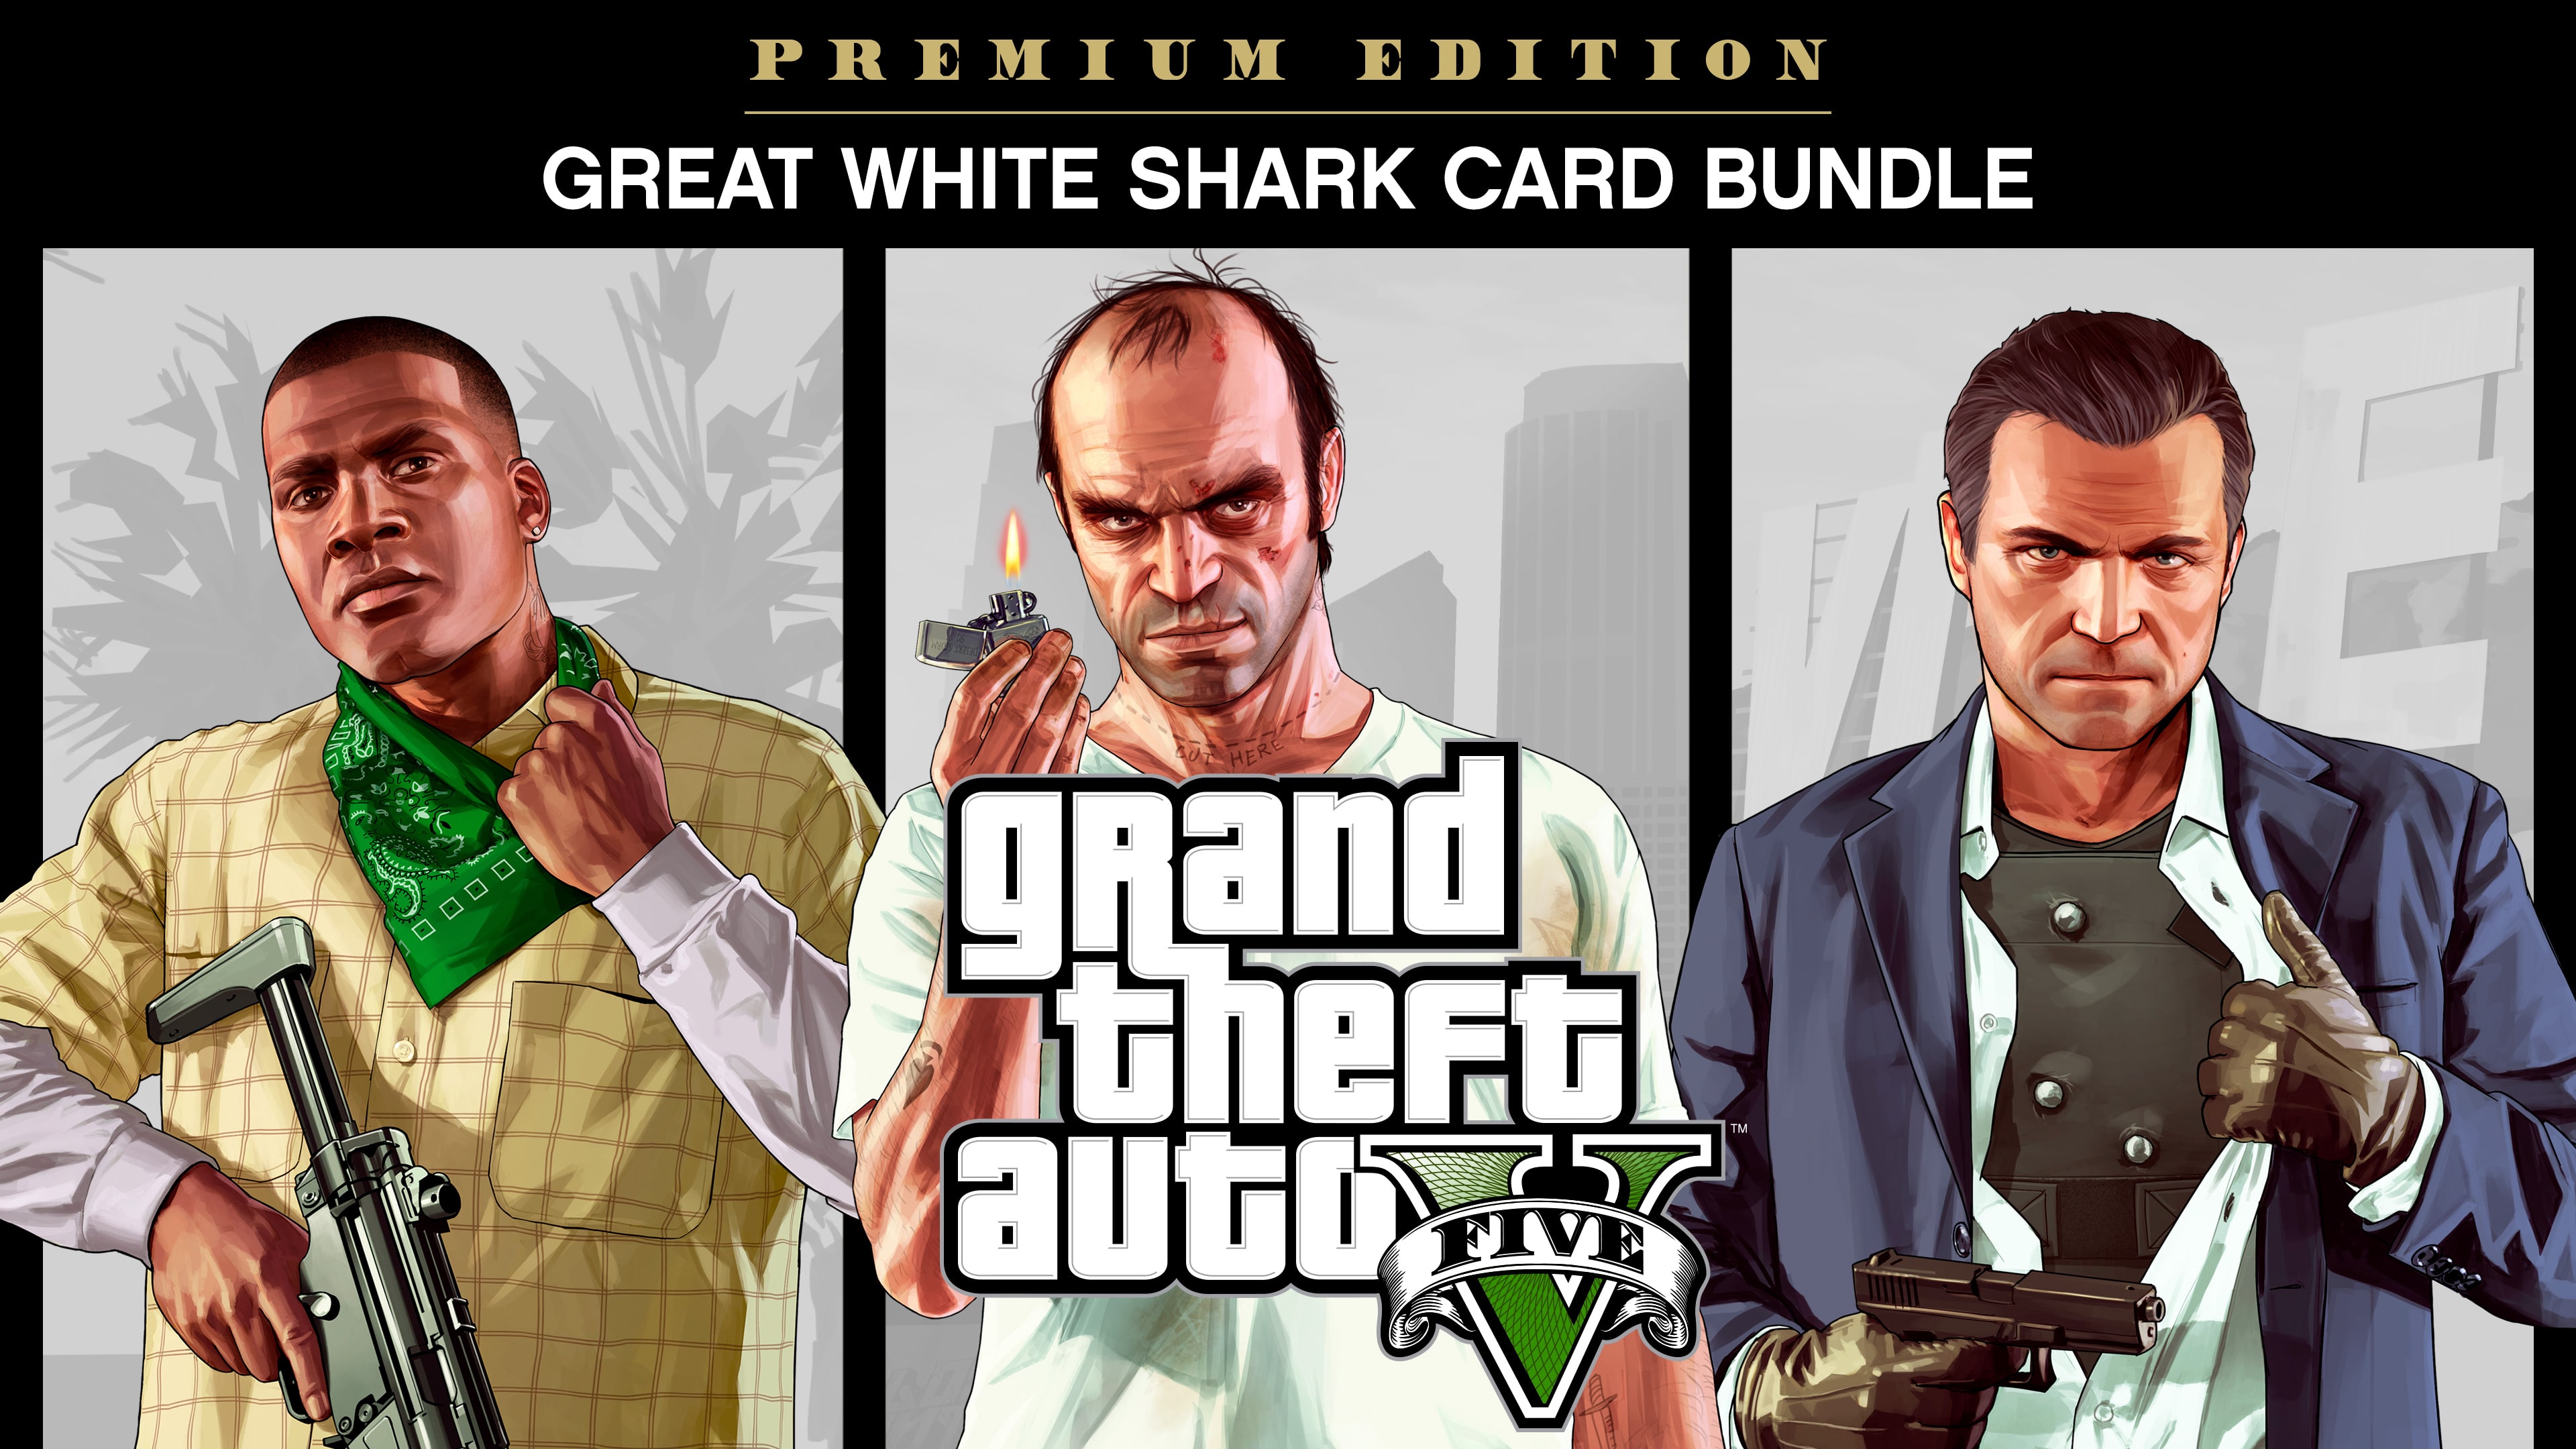 Pacchetto Grand Theft Auto V: Premium Edition + carta prepagata Great white shark